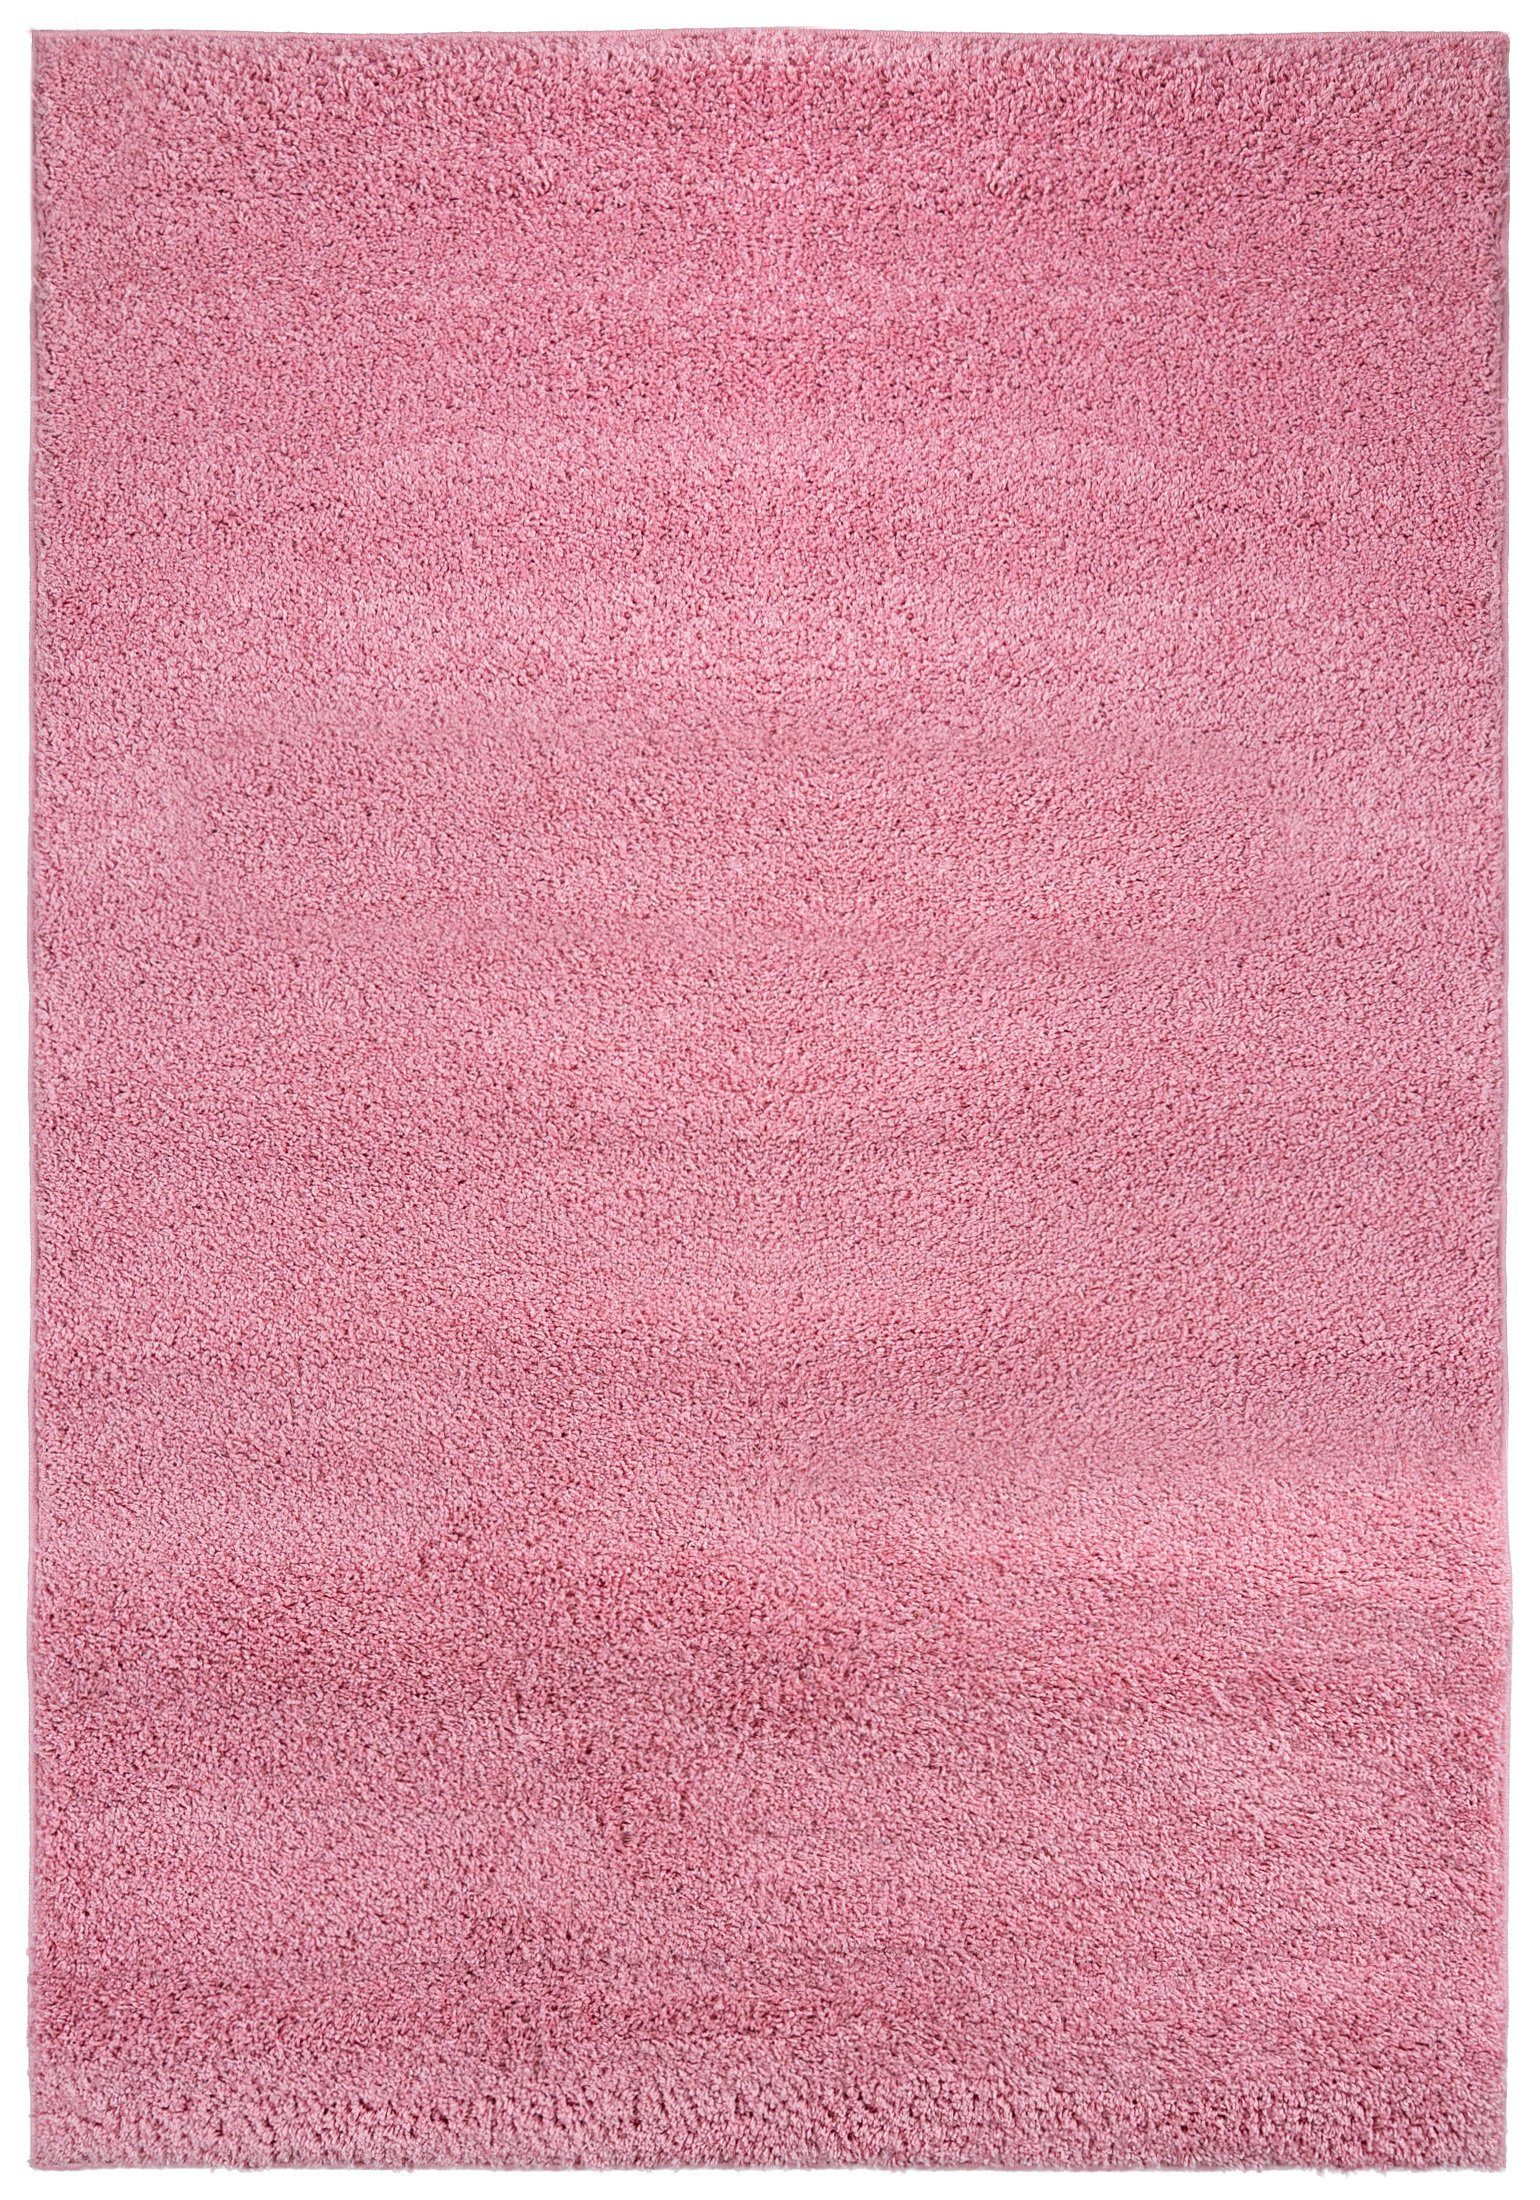 Hochflor-Teppich Hochflor Shaggy Teppich für Wohnzimmer - Höhe 30 mm Rosa Pink, Mazovia, 60 x 100 cm, Pflegeleicht, Einfarbig Uni, Langflor, Rechteckig, Weich Rosa Pink / 7388A